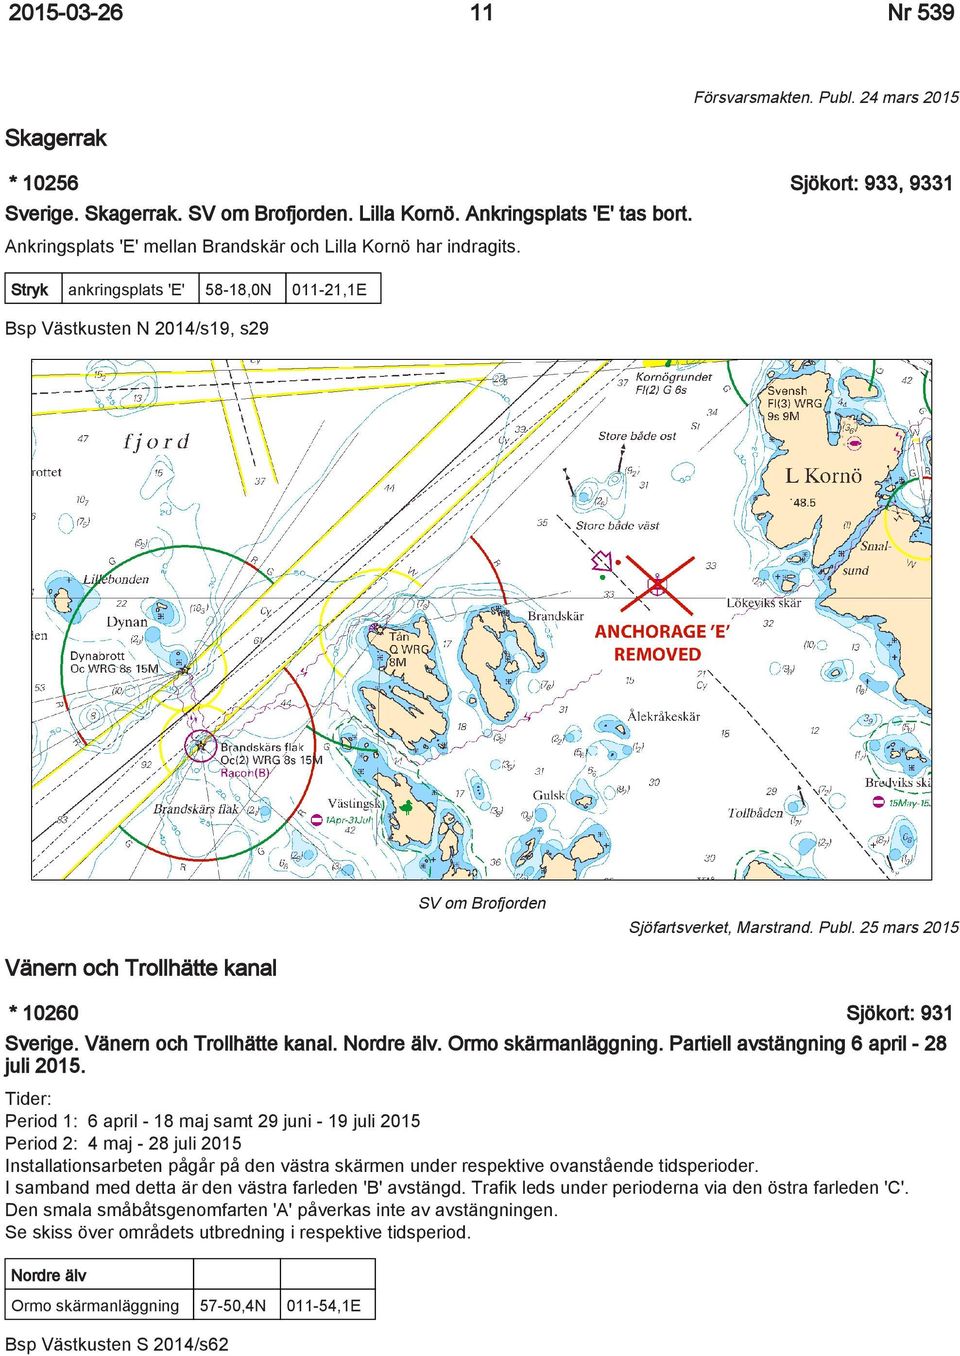 25 mars 2015 Vänern och Trollhätte kanal * 10260 Sjökort: 931 Sverige. Vänern och Trollhätte kanal. Nordre älv. Ormo skärmanläggning. Partiell avstängning 6 april - 28 juli 2015.